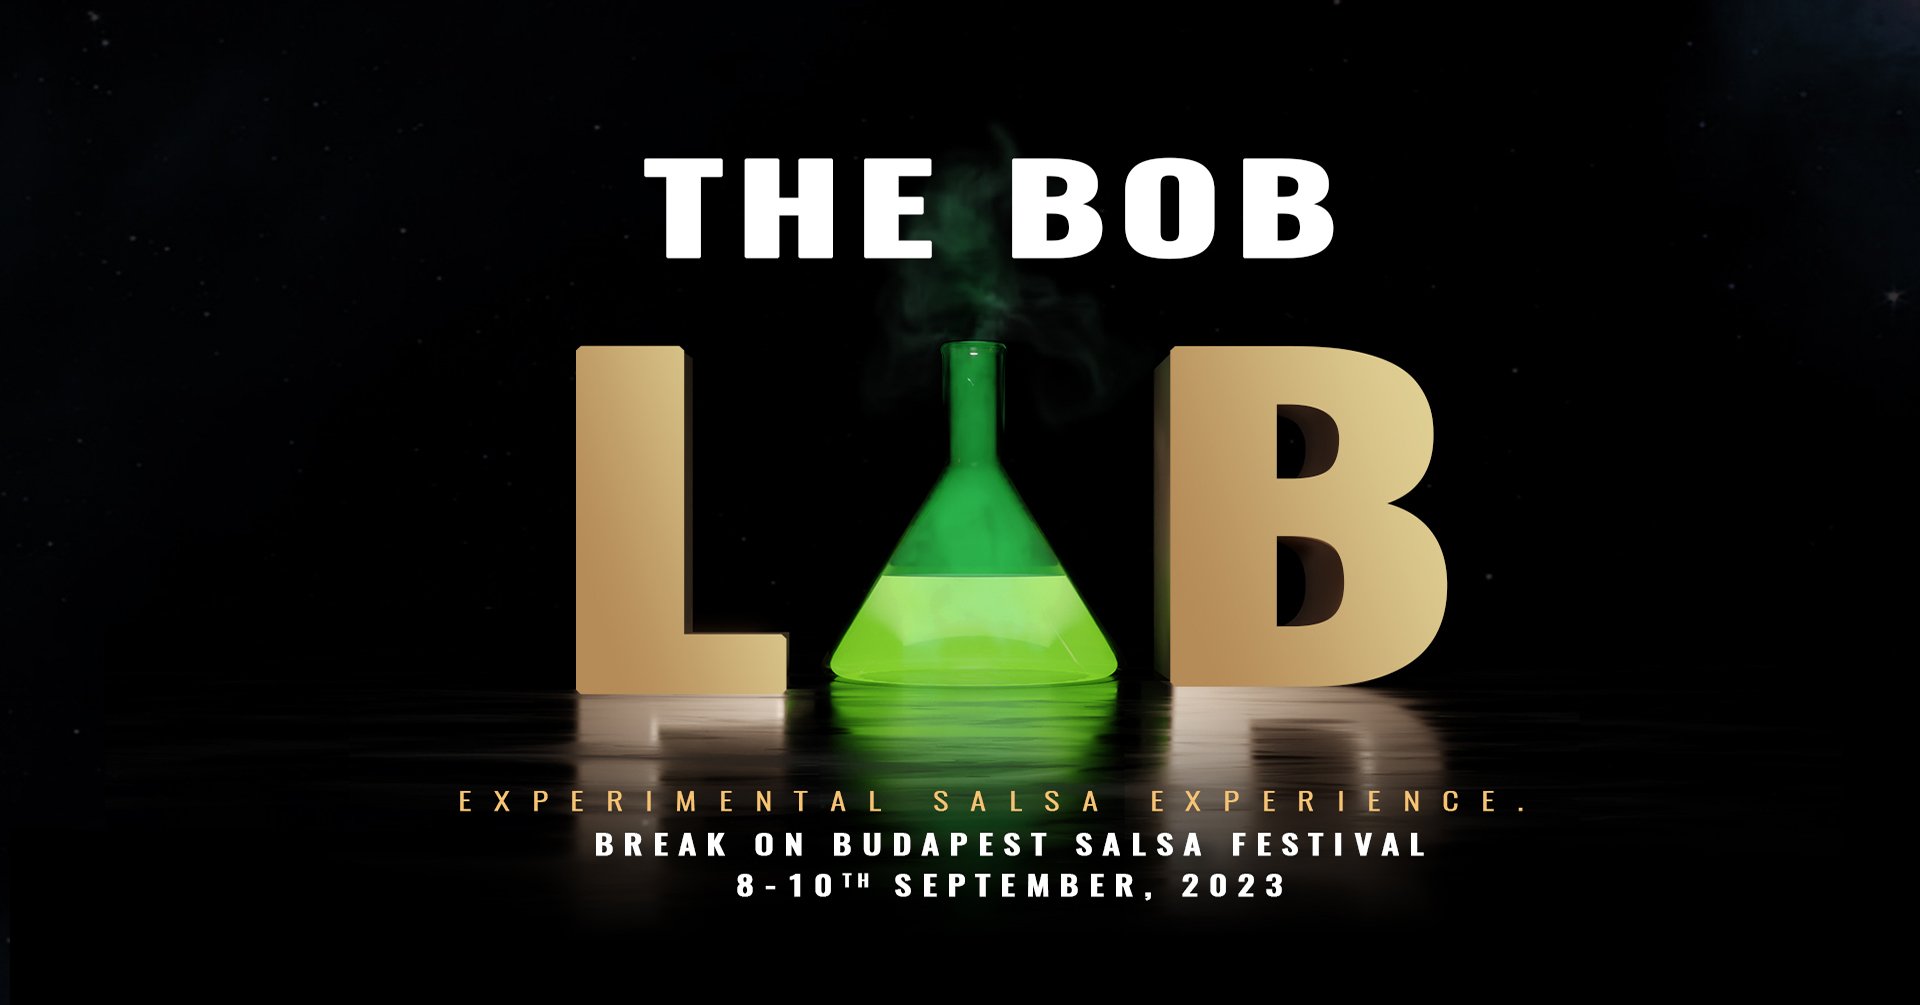 BOB Lab - Break On Budapest Salsa Festival 8-10th September 2023